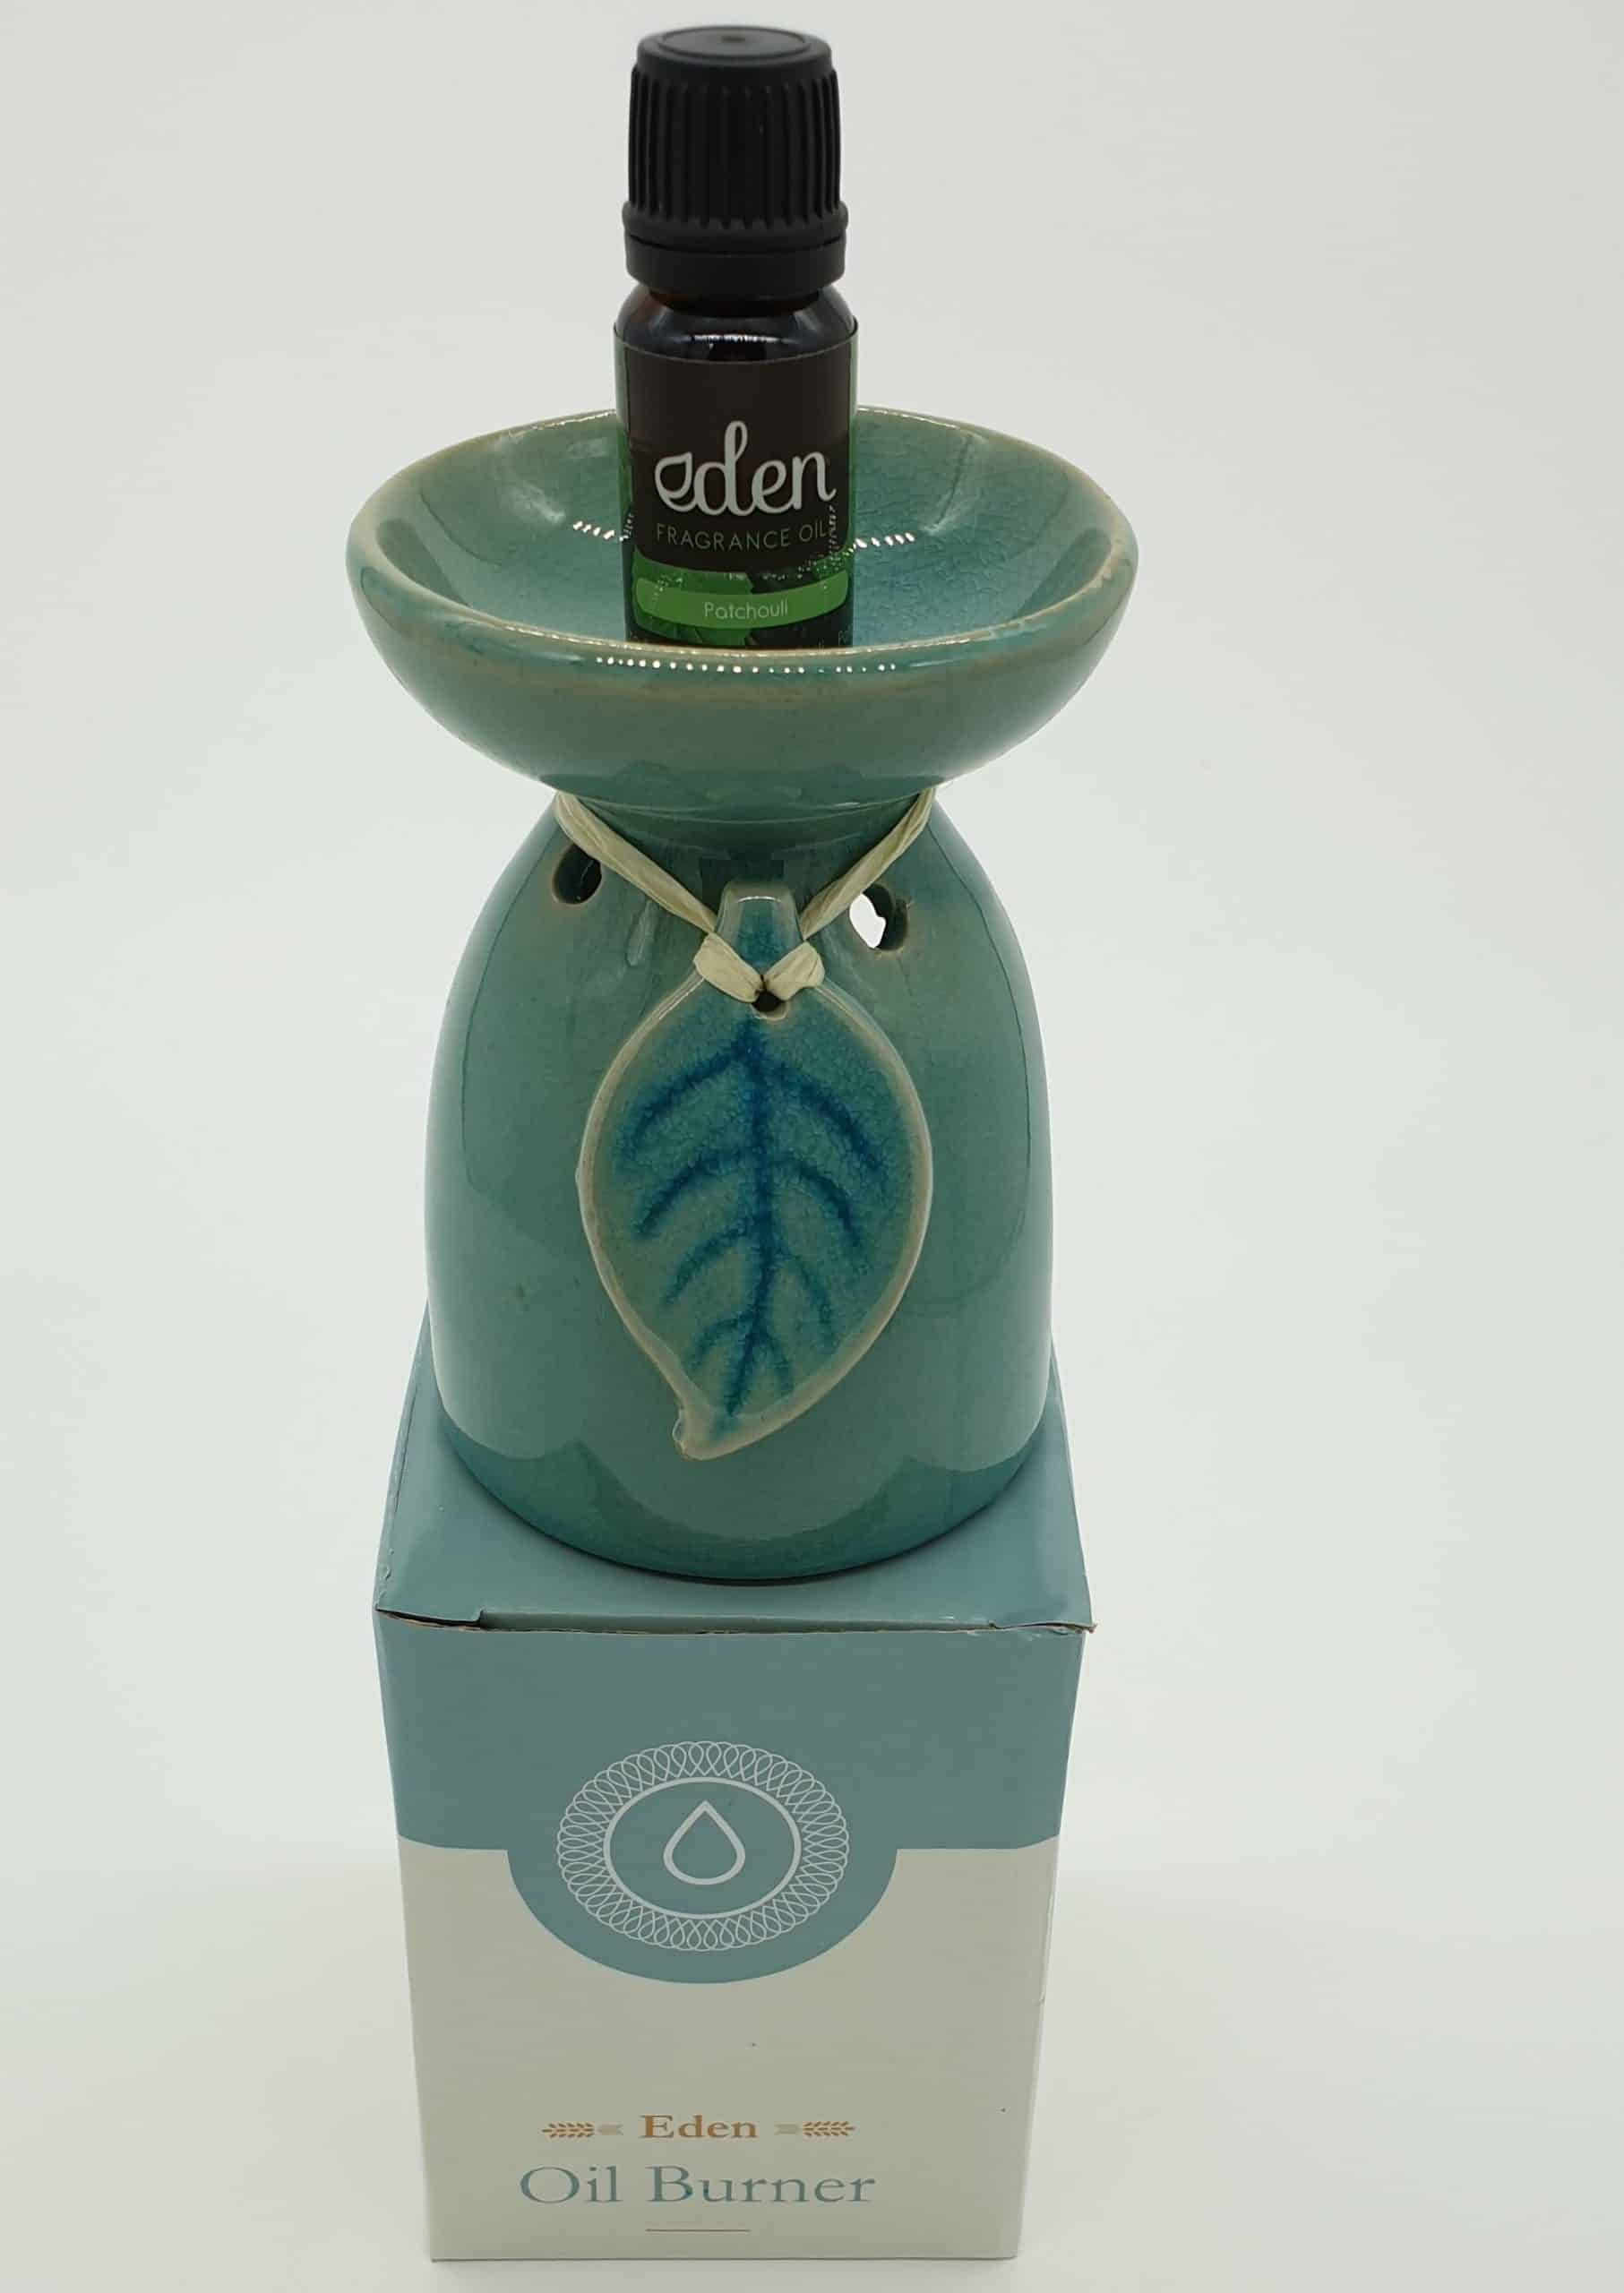 Eden Ceramic Oil Burner - Turquoise/Mint Green, Leaf Design